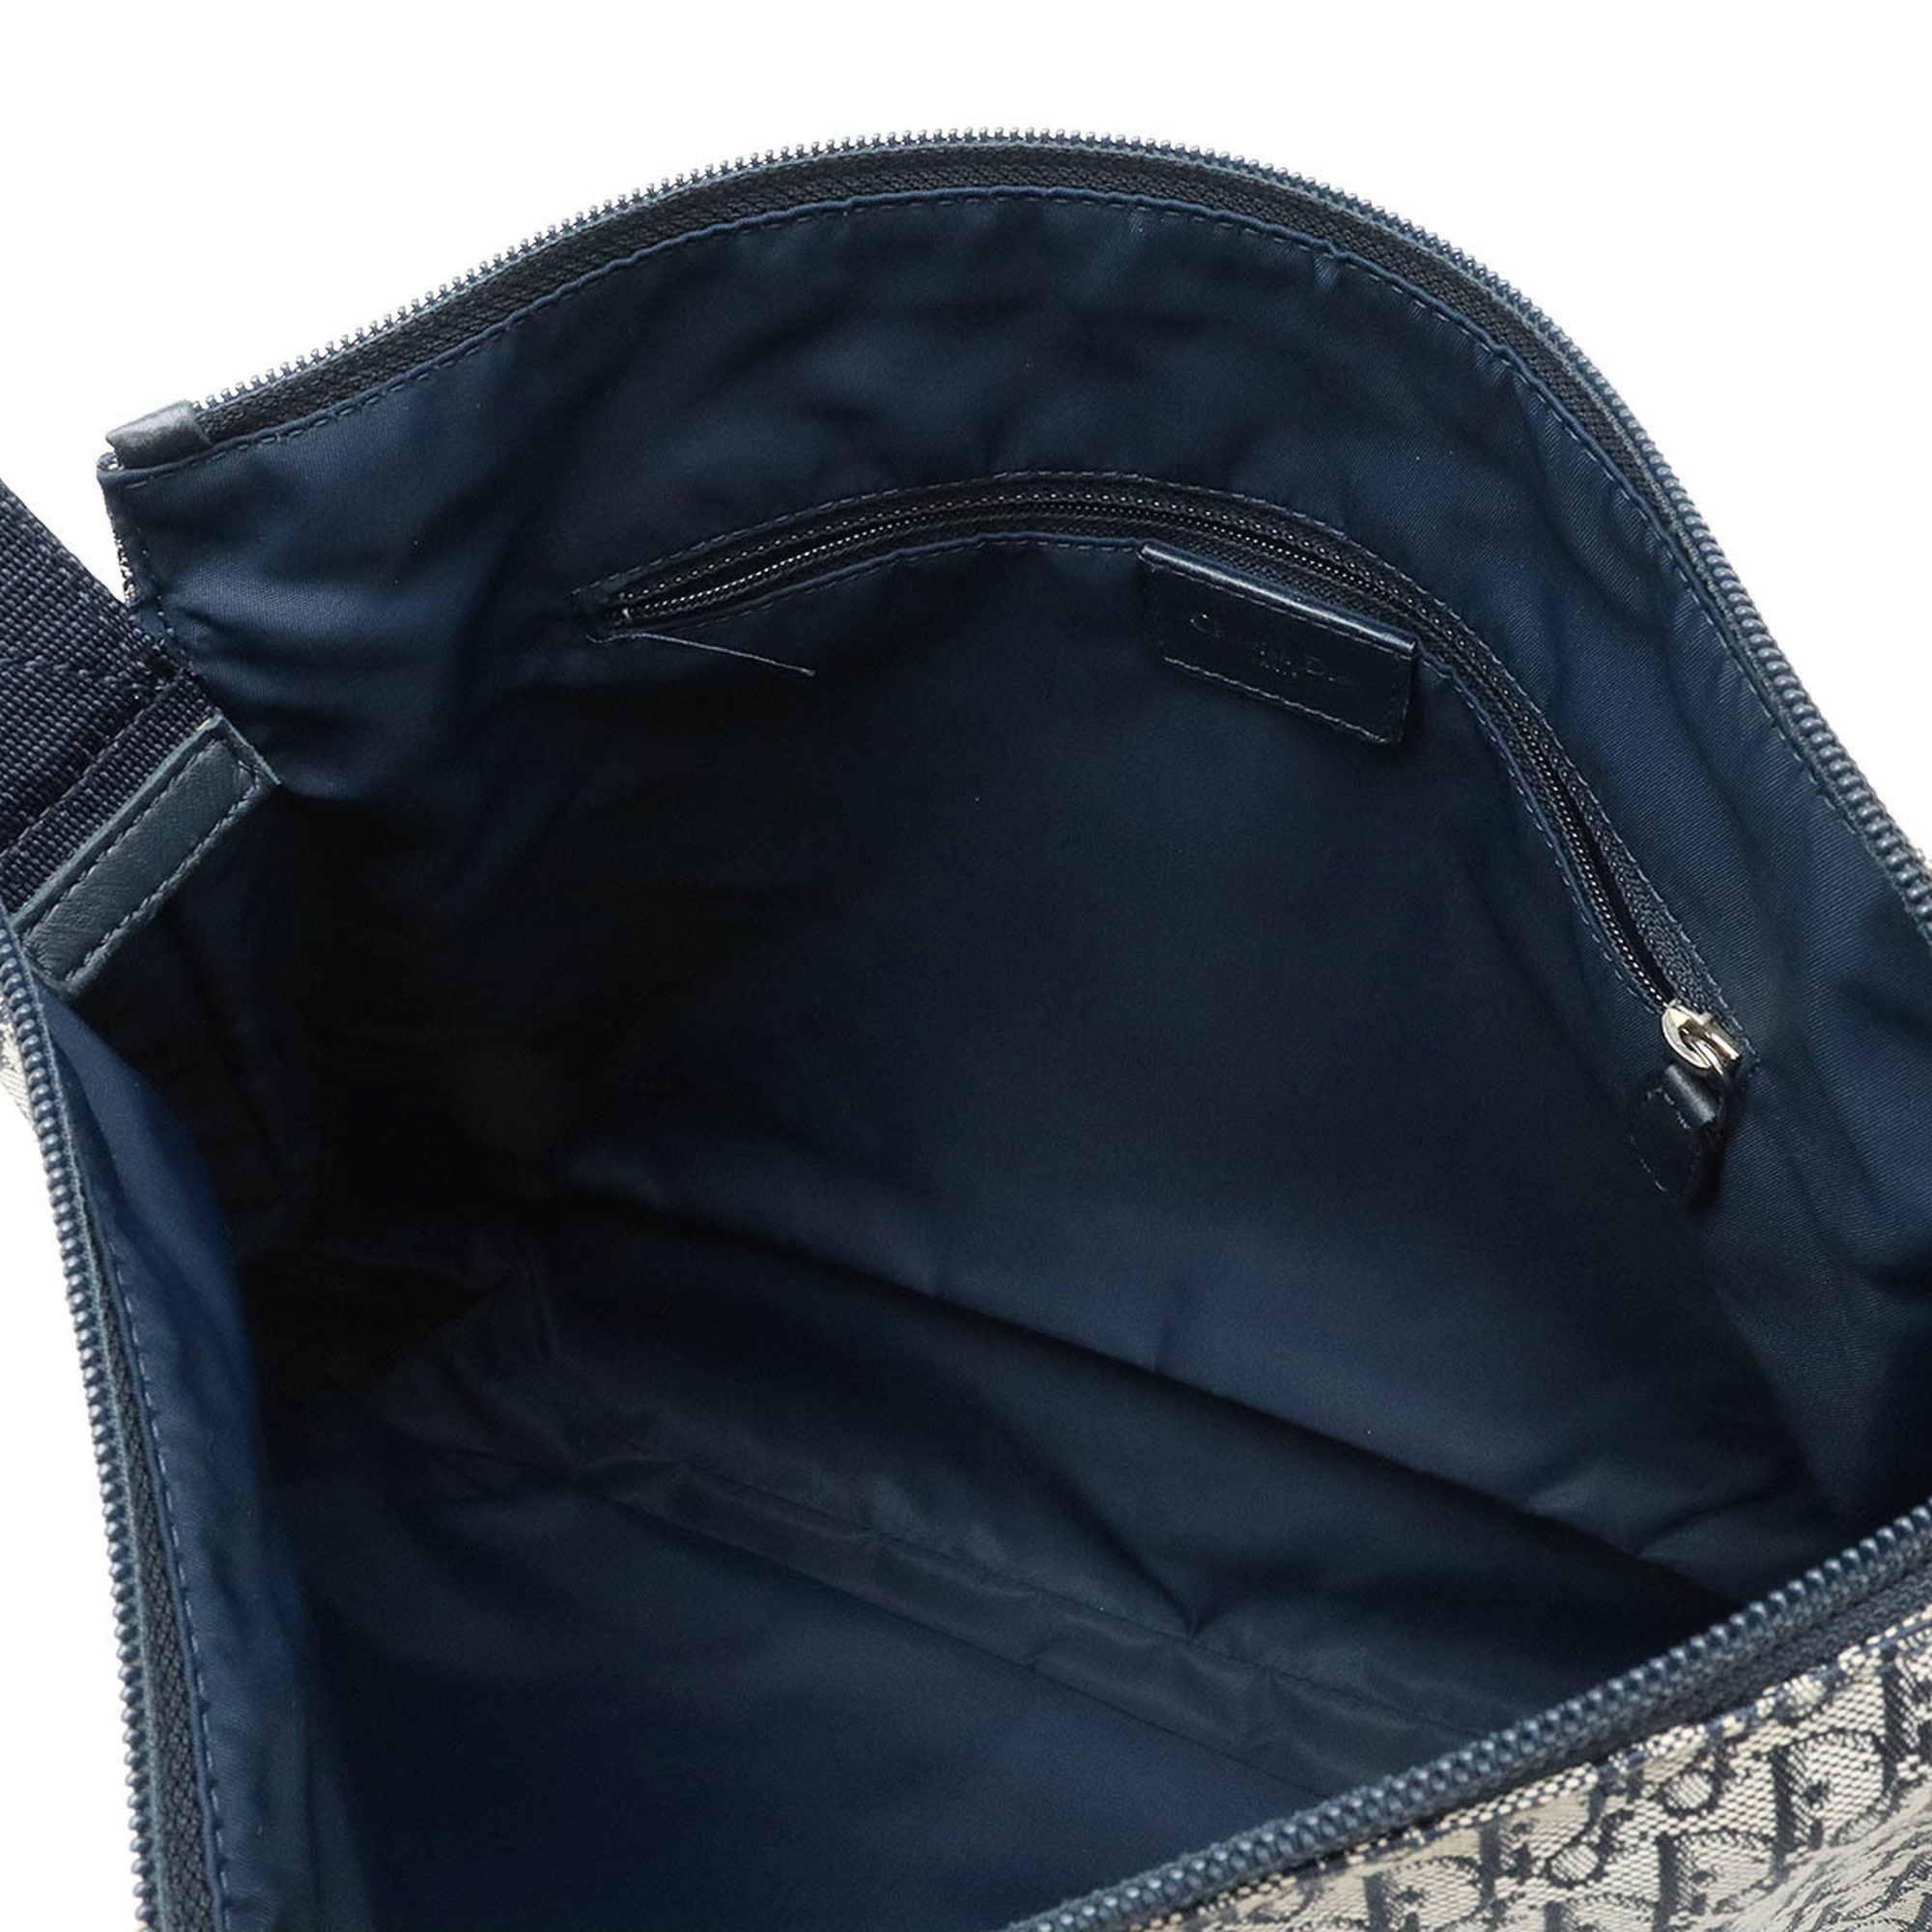 Christian Dior Trotter Shoulder Bag Canvas Leather Navy